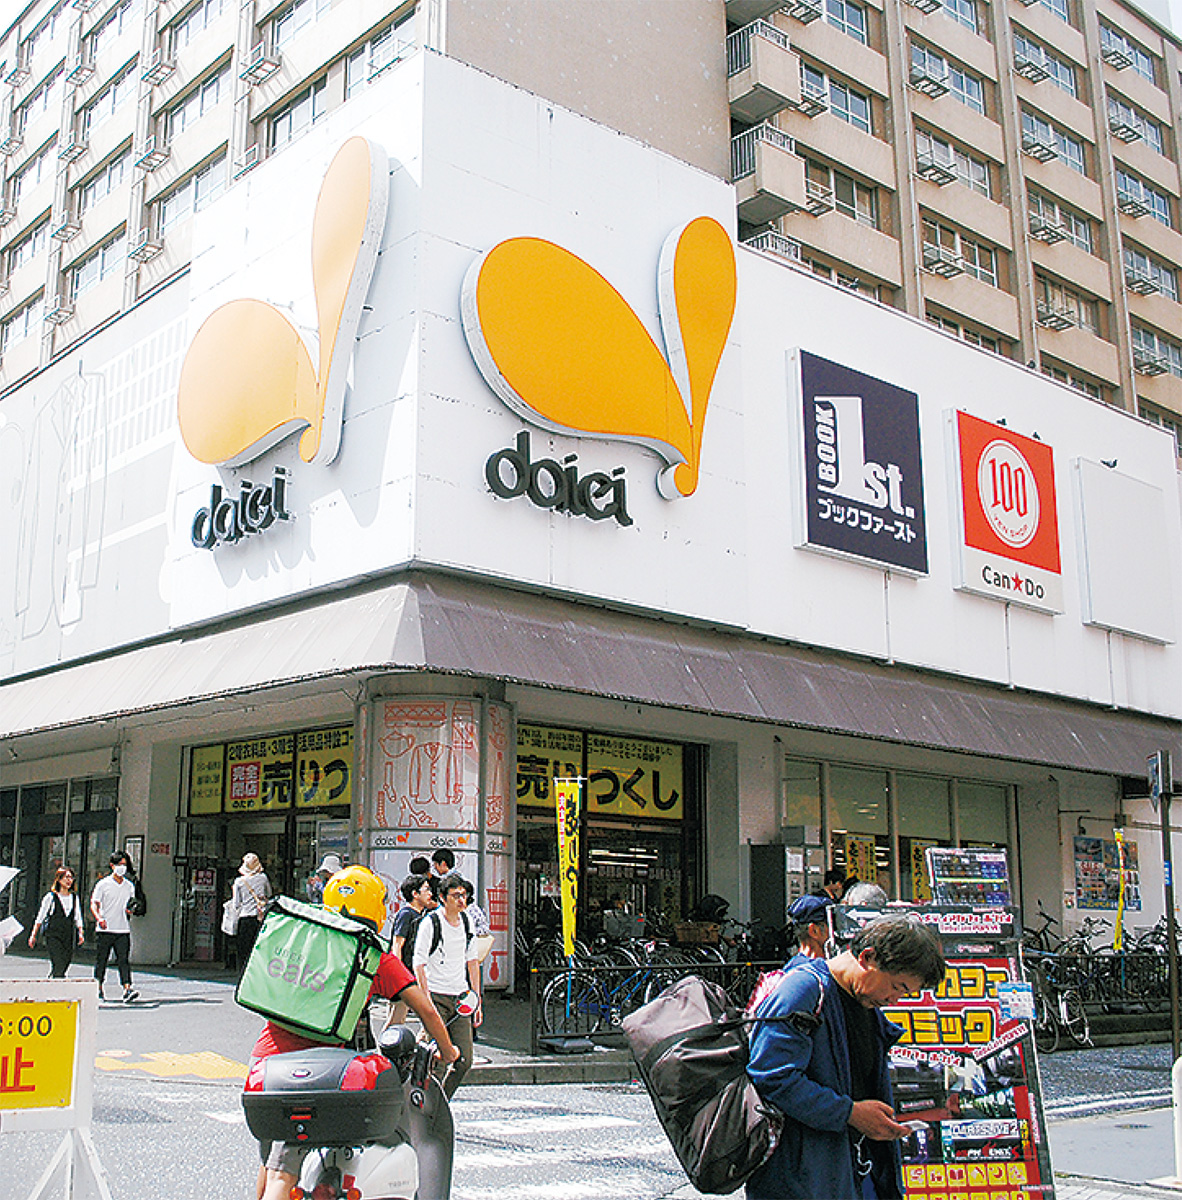 ダイエー横浜西口店が完全閉店へ テナントビルは建替えを予定 中区 西区 タウンニュース